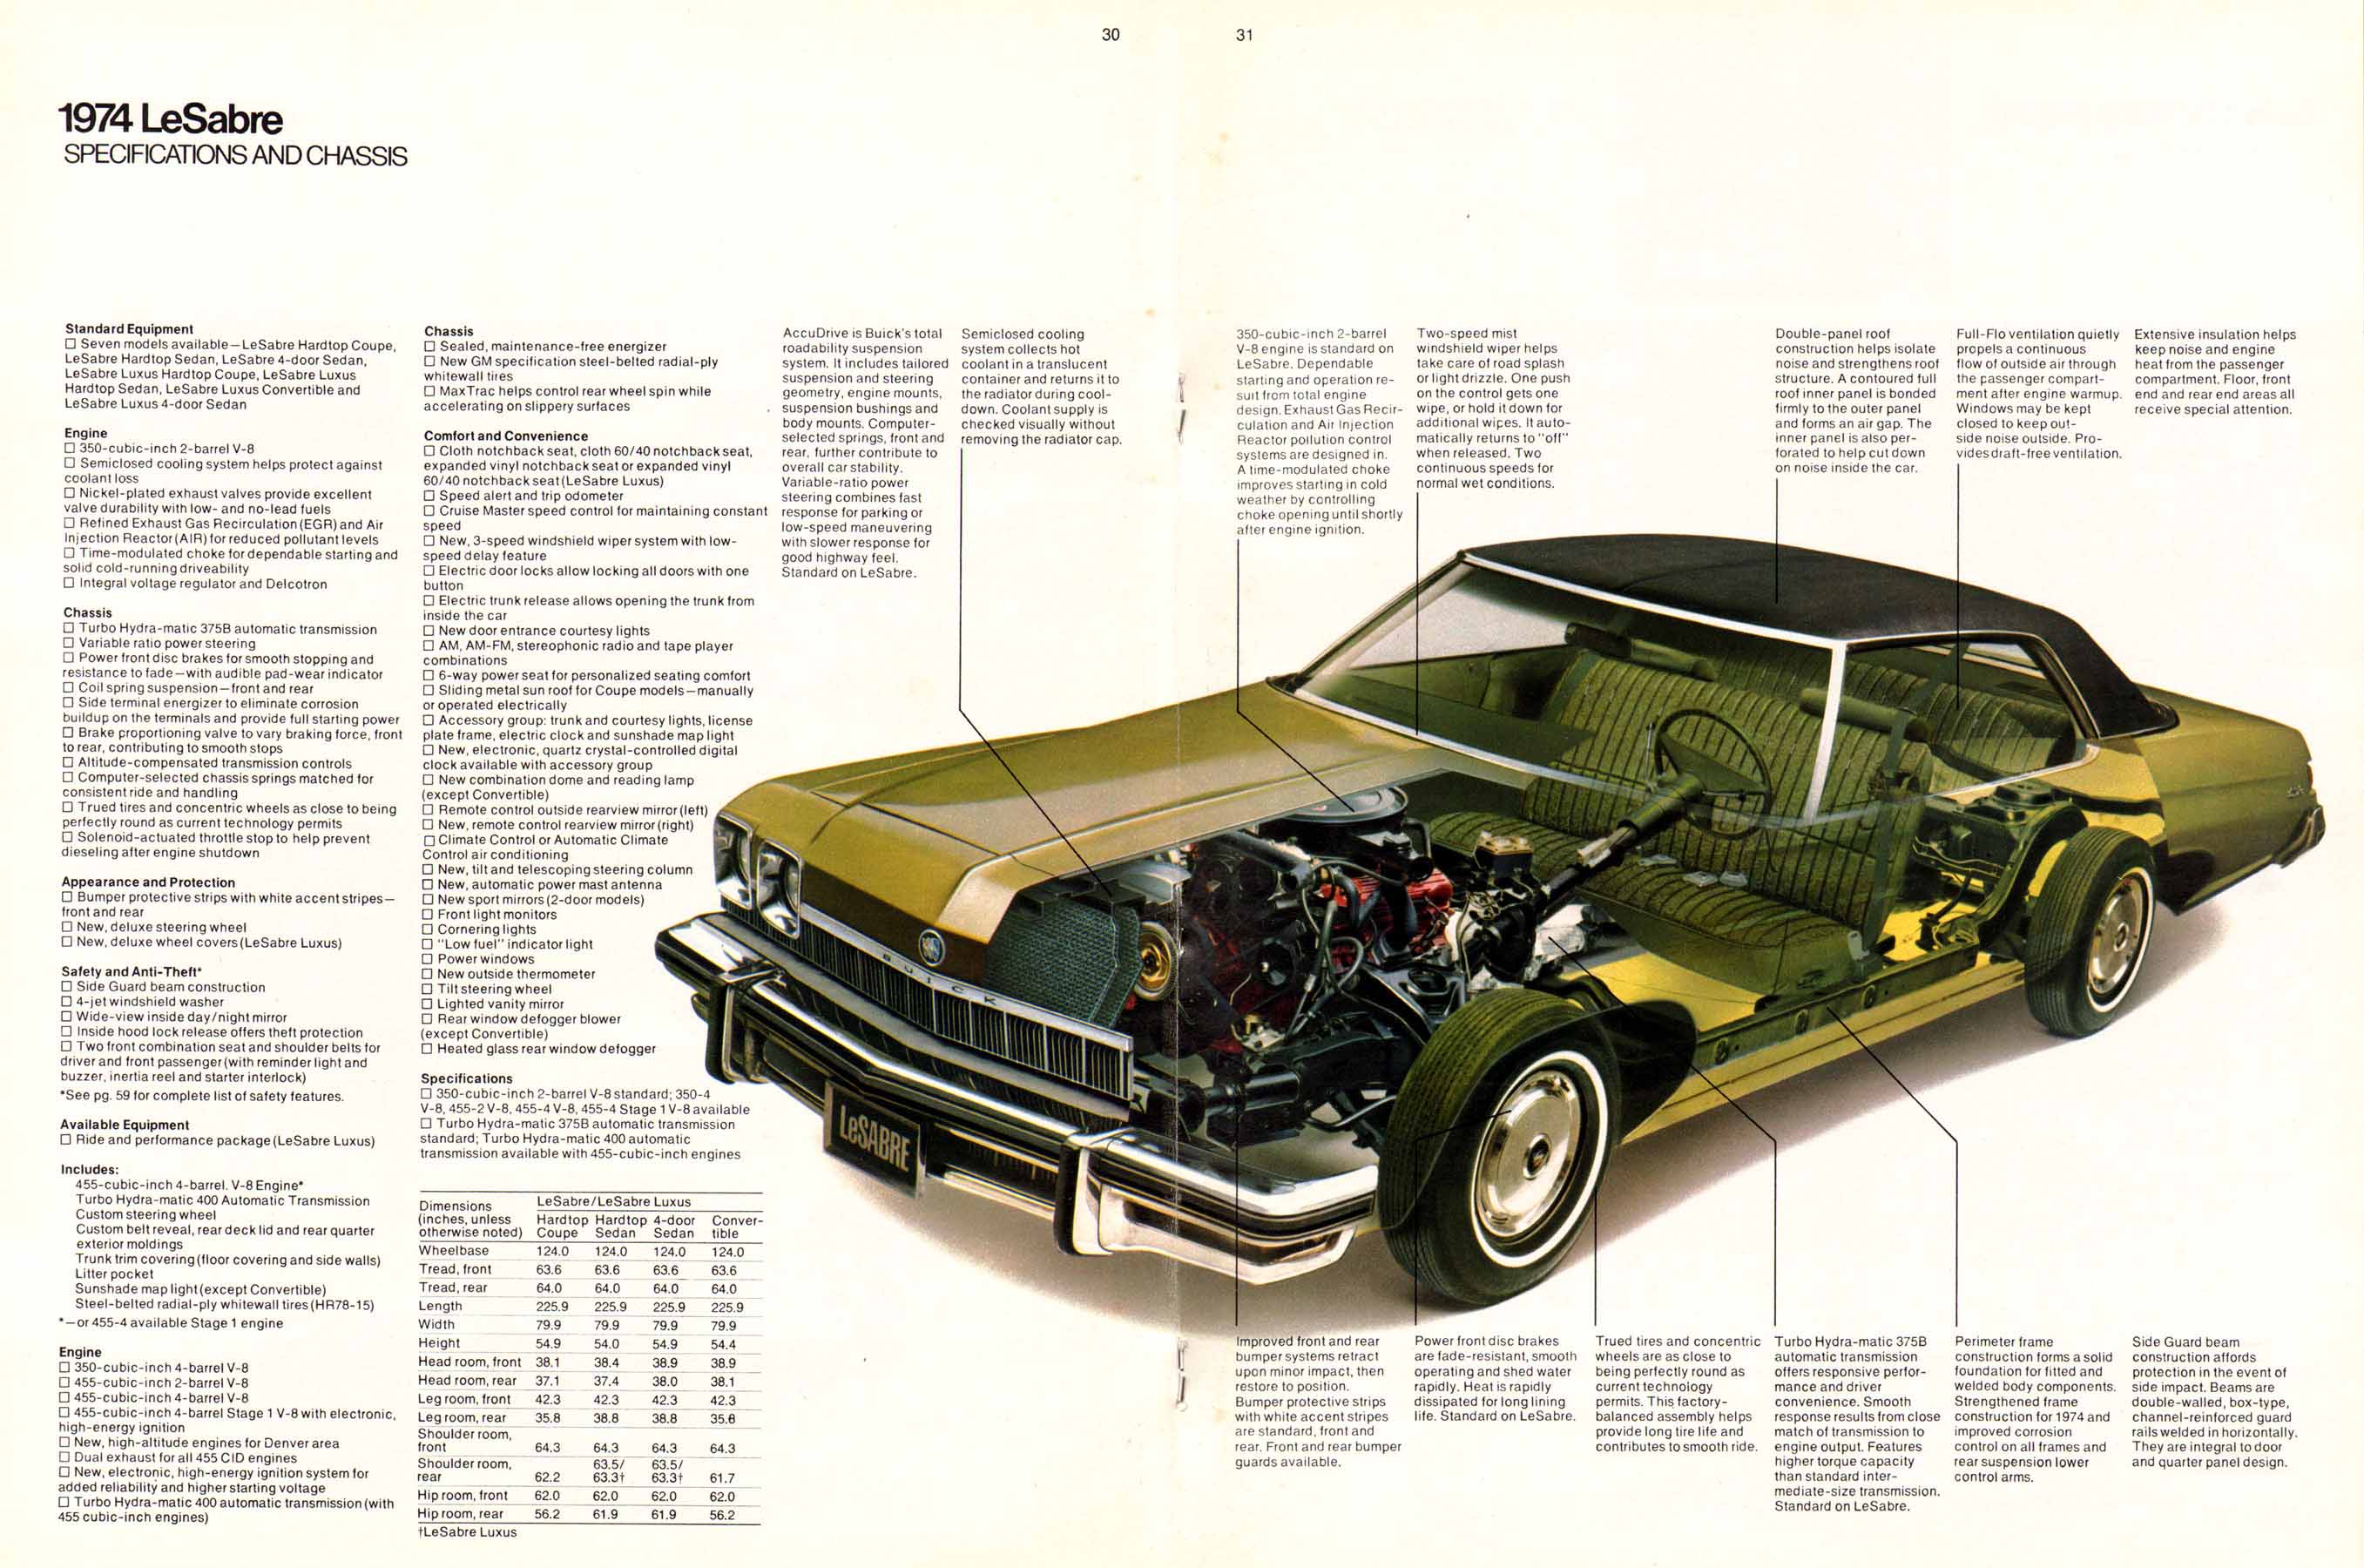 1974 Buick Full Line-32-33